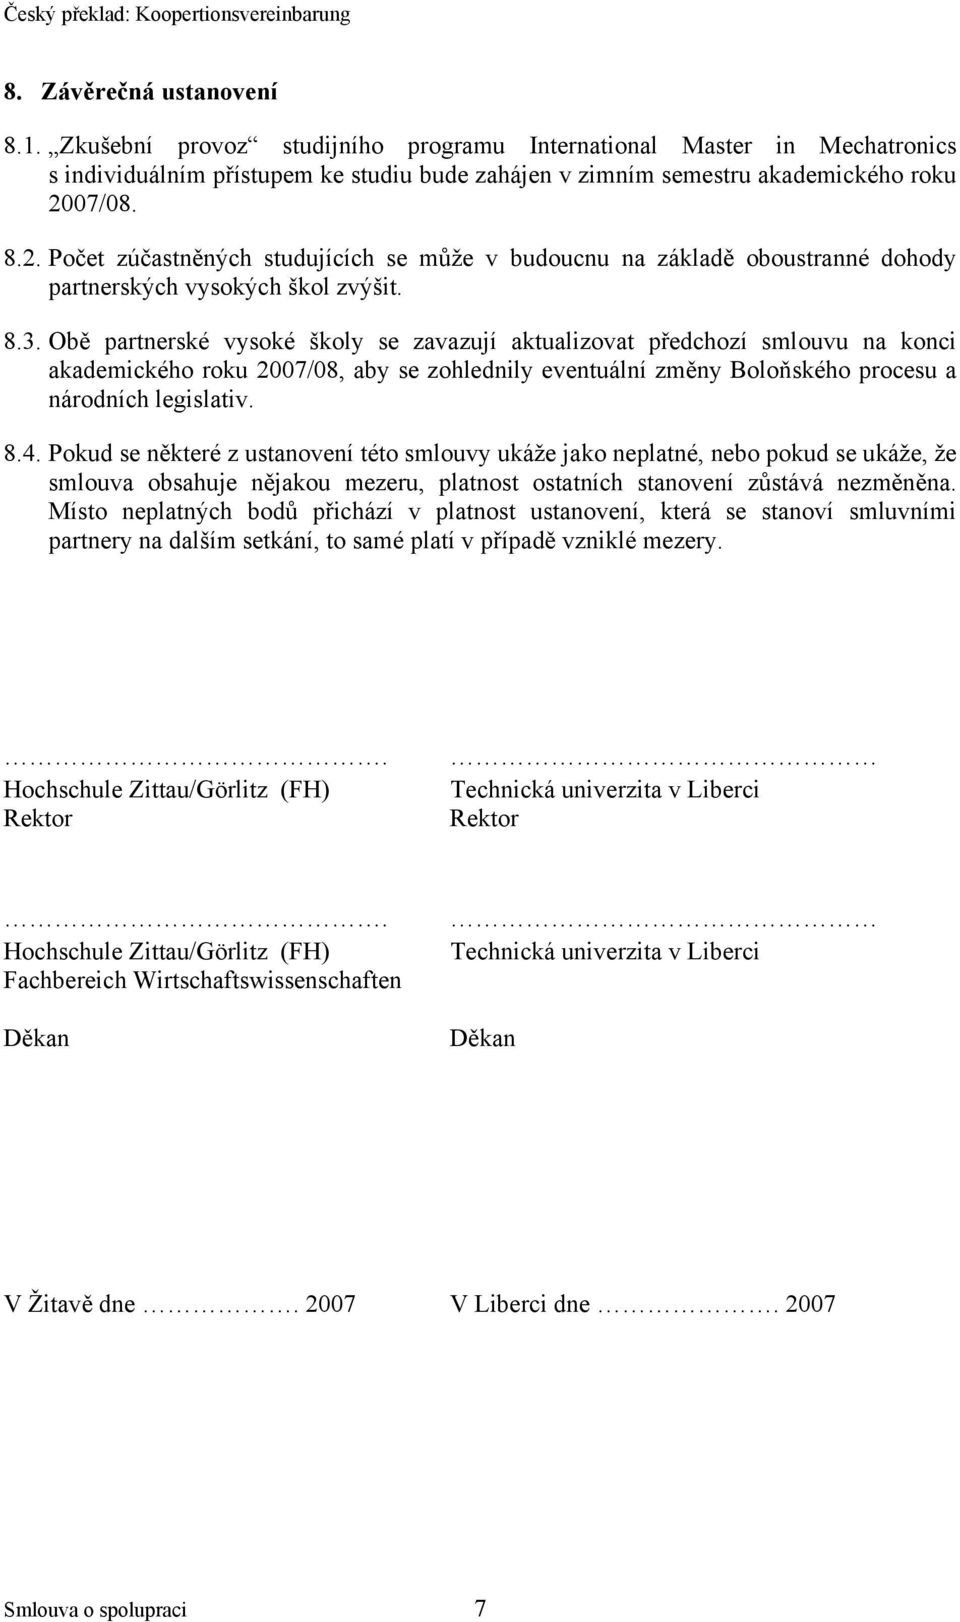 Obě partnerské vysoké školy se zavazují aktualizovat předchozí smlouvu na konci akademického roku 2007/08, aby se zohlednily eventuální změny Boloňského procesu a národních legislativ. 8.4.